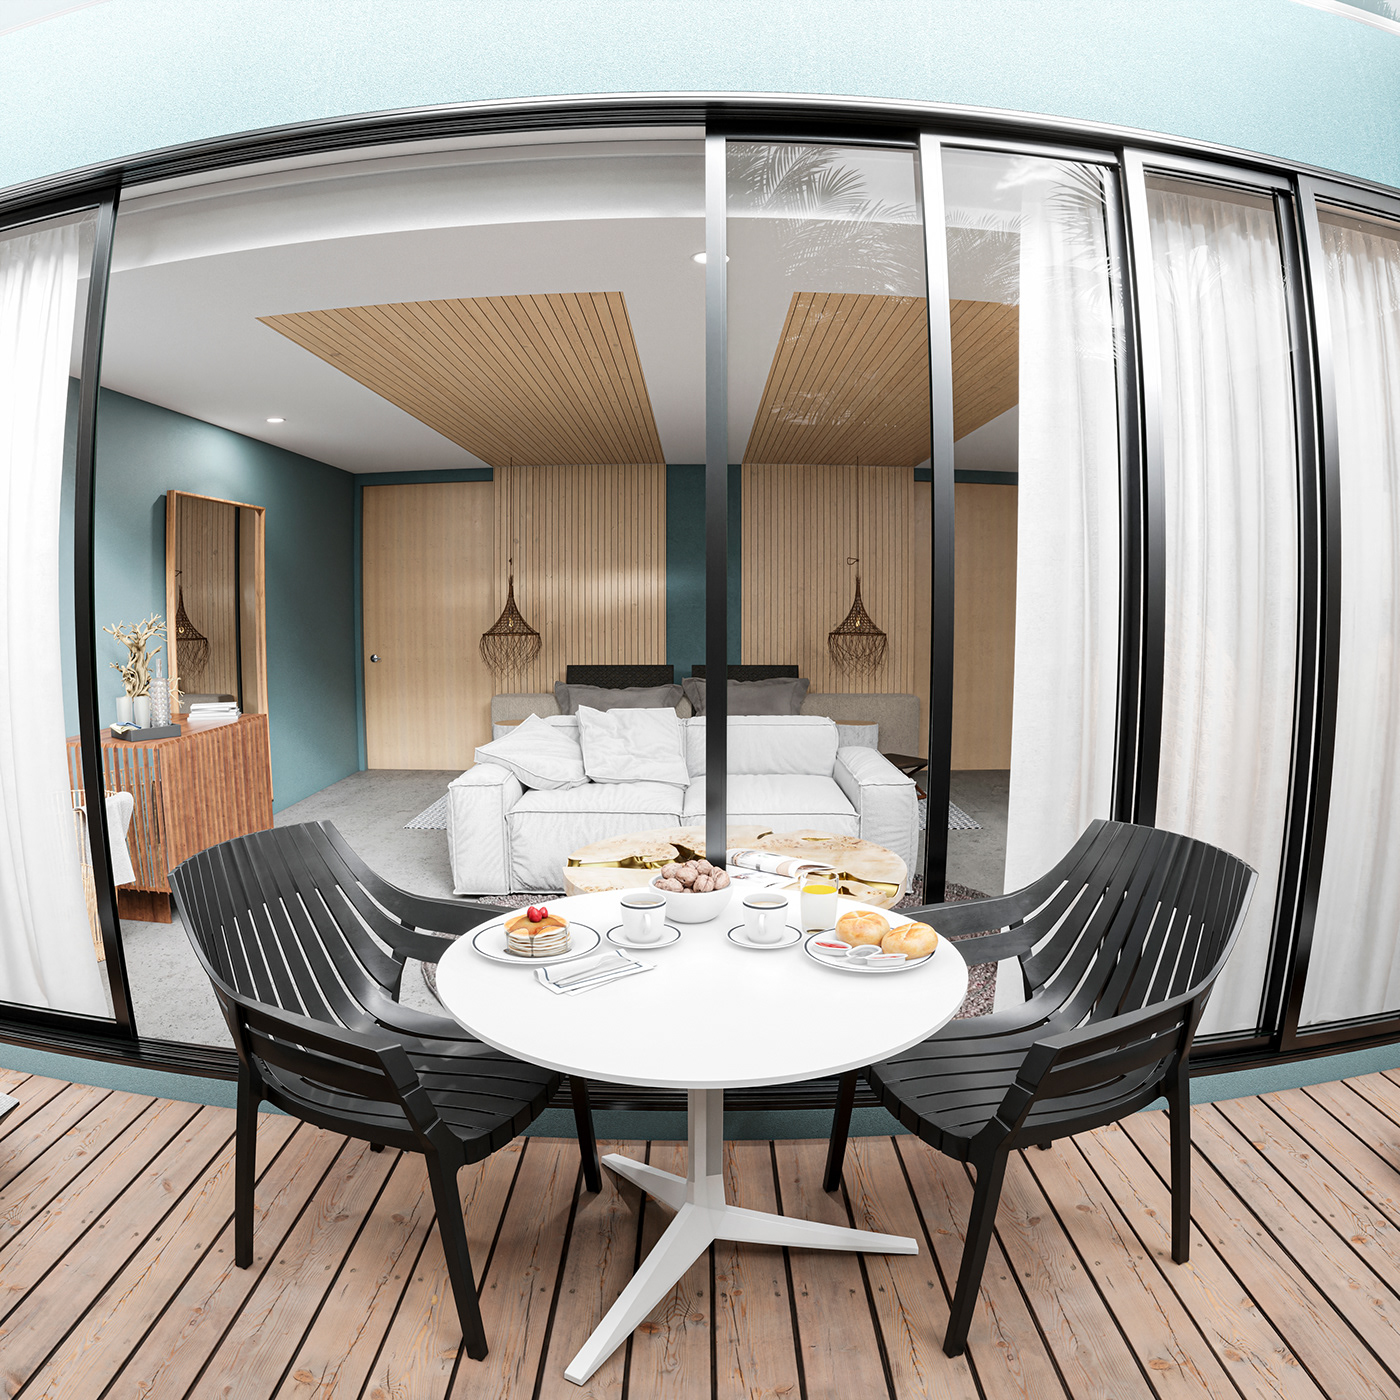 3D 3ds max architecture visualization Render archviz exterior corona render  interior design  modern